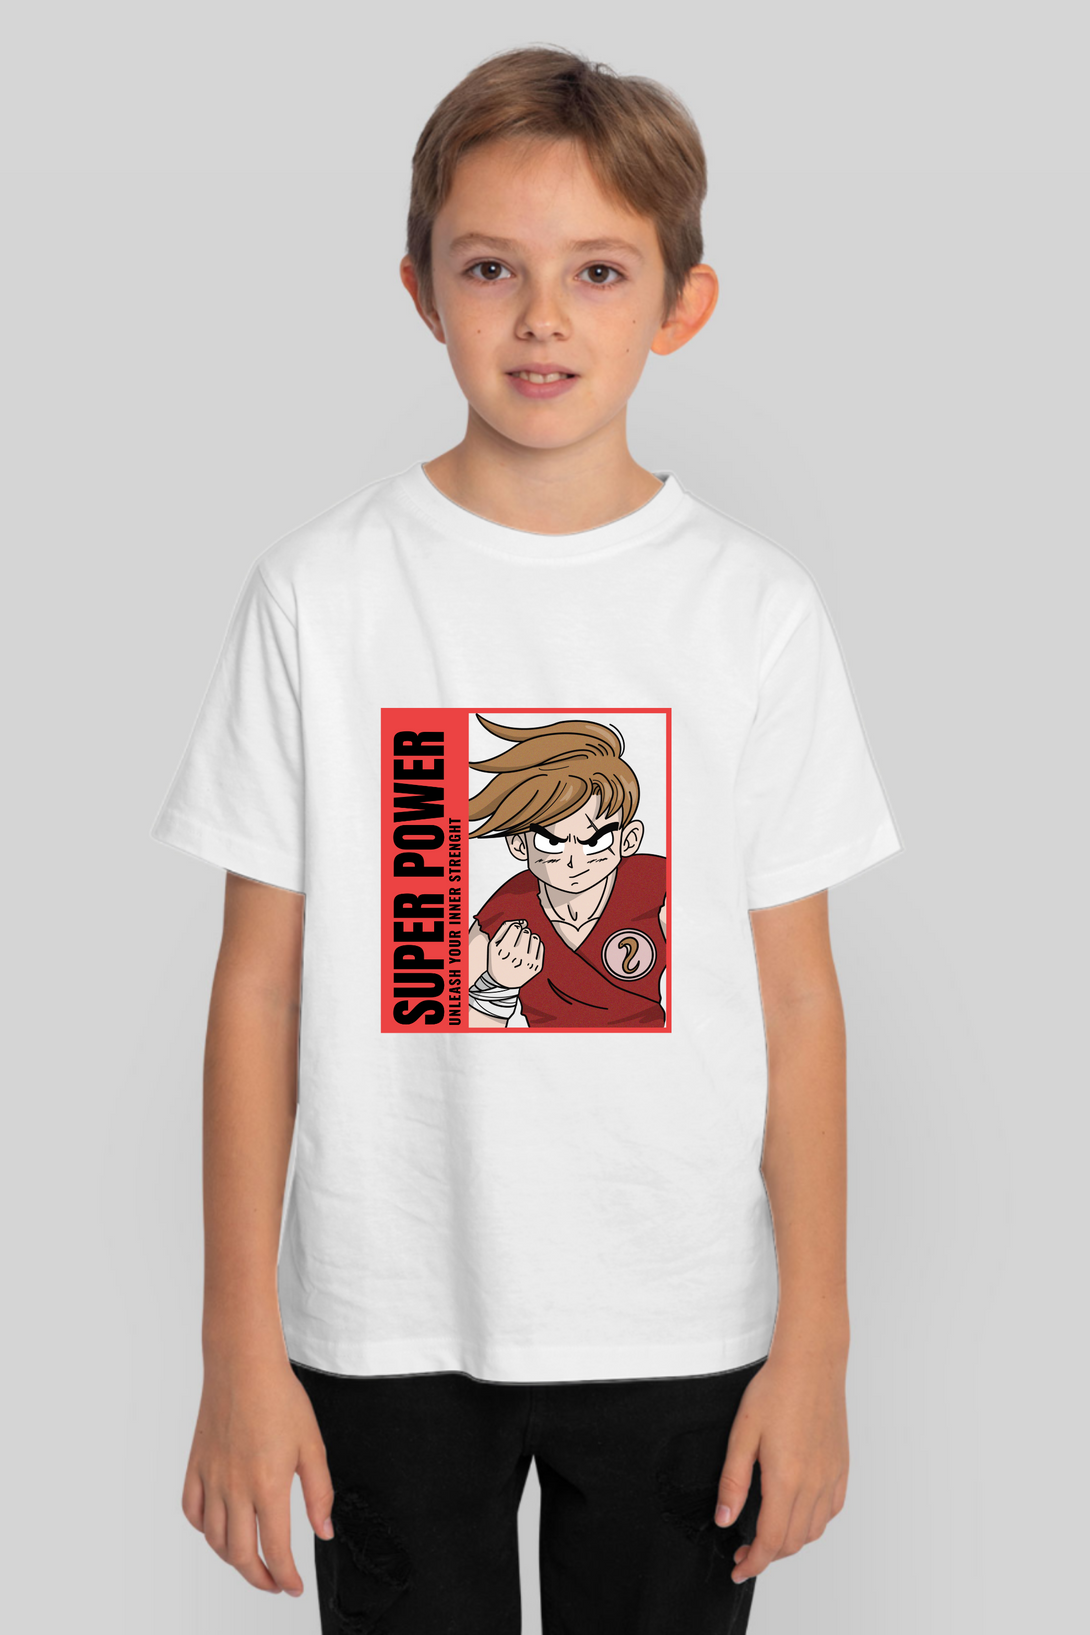 Anime Dragon Ballz Printed T-Shirt For Boy - WowWaves - 7